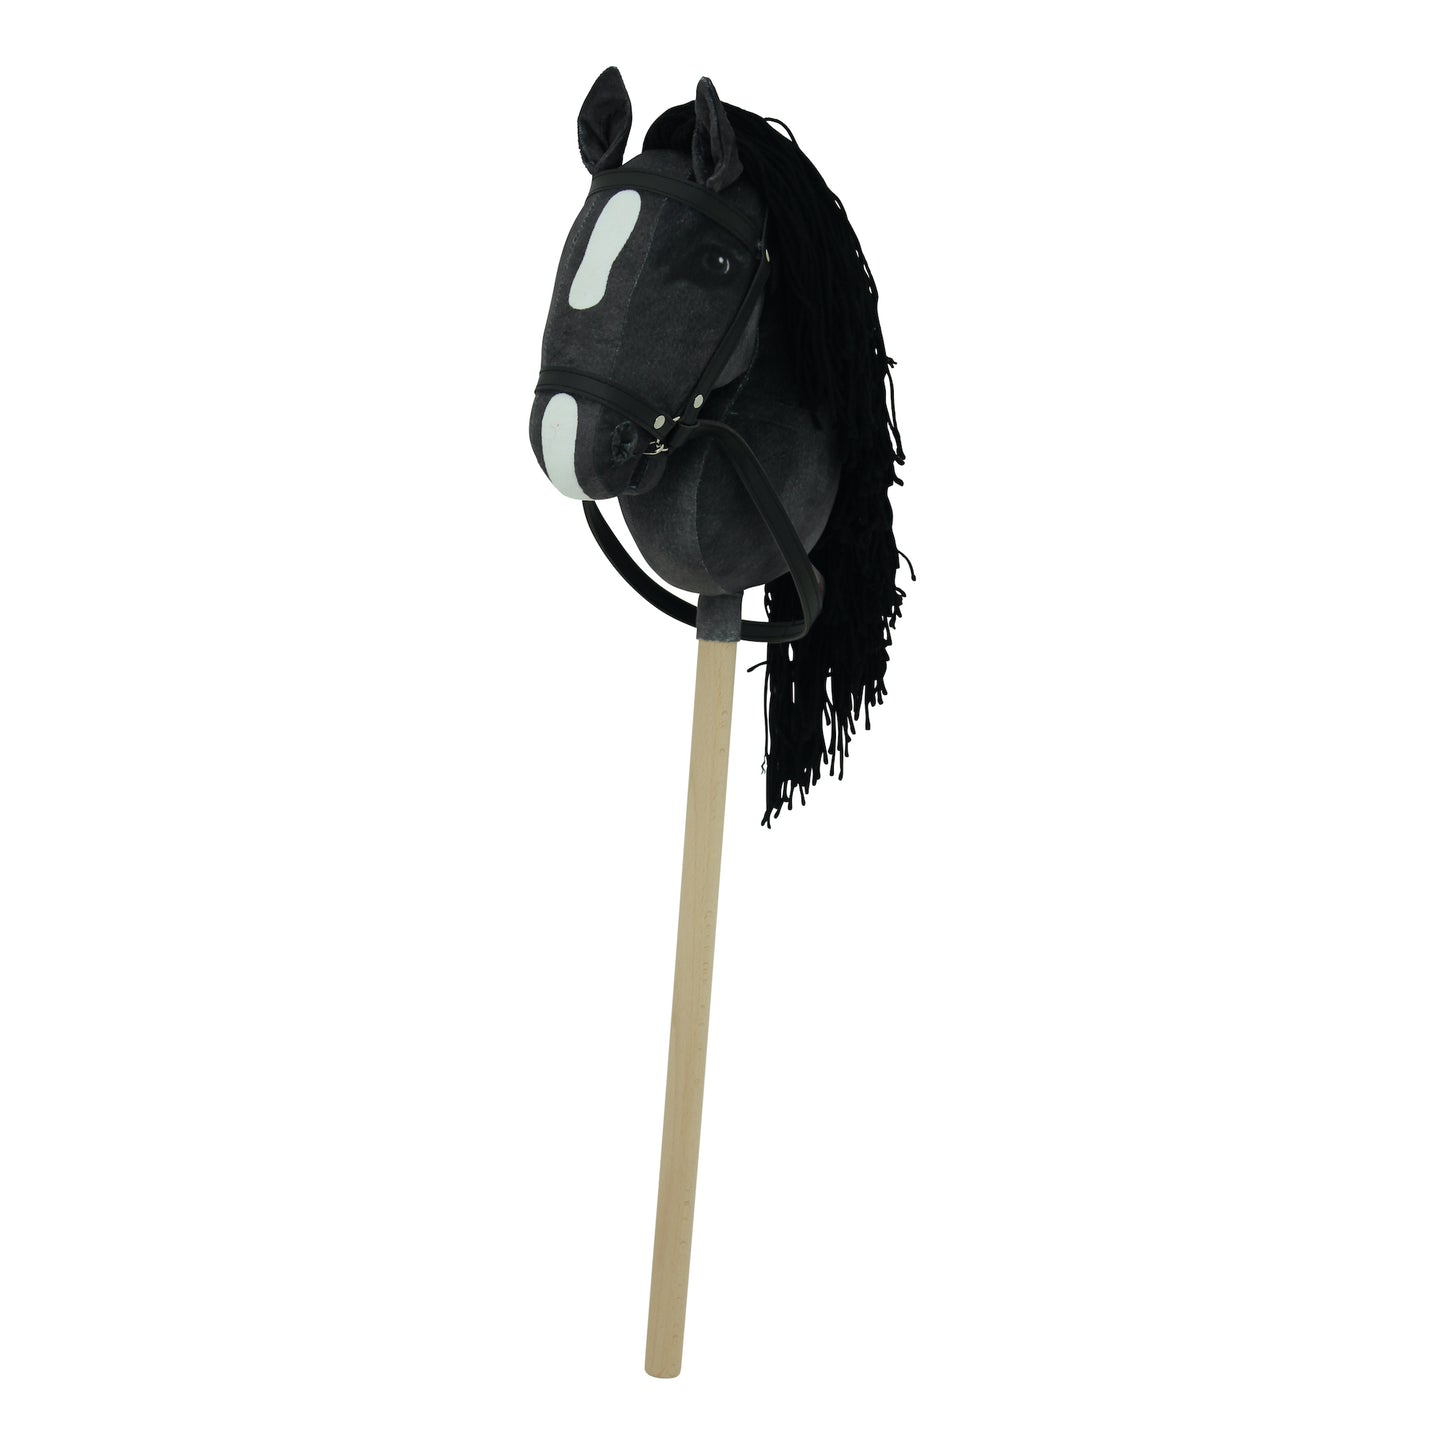 Haasenstrauch Sweety Toys Hobbyhorse-2er Set Steckenpferd in schwarz und in dunkelbraun geeignet für Hobbyhorsing & Transportbeutel